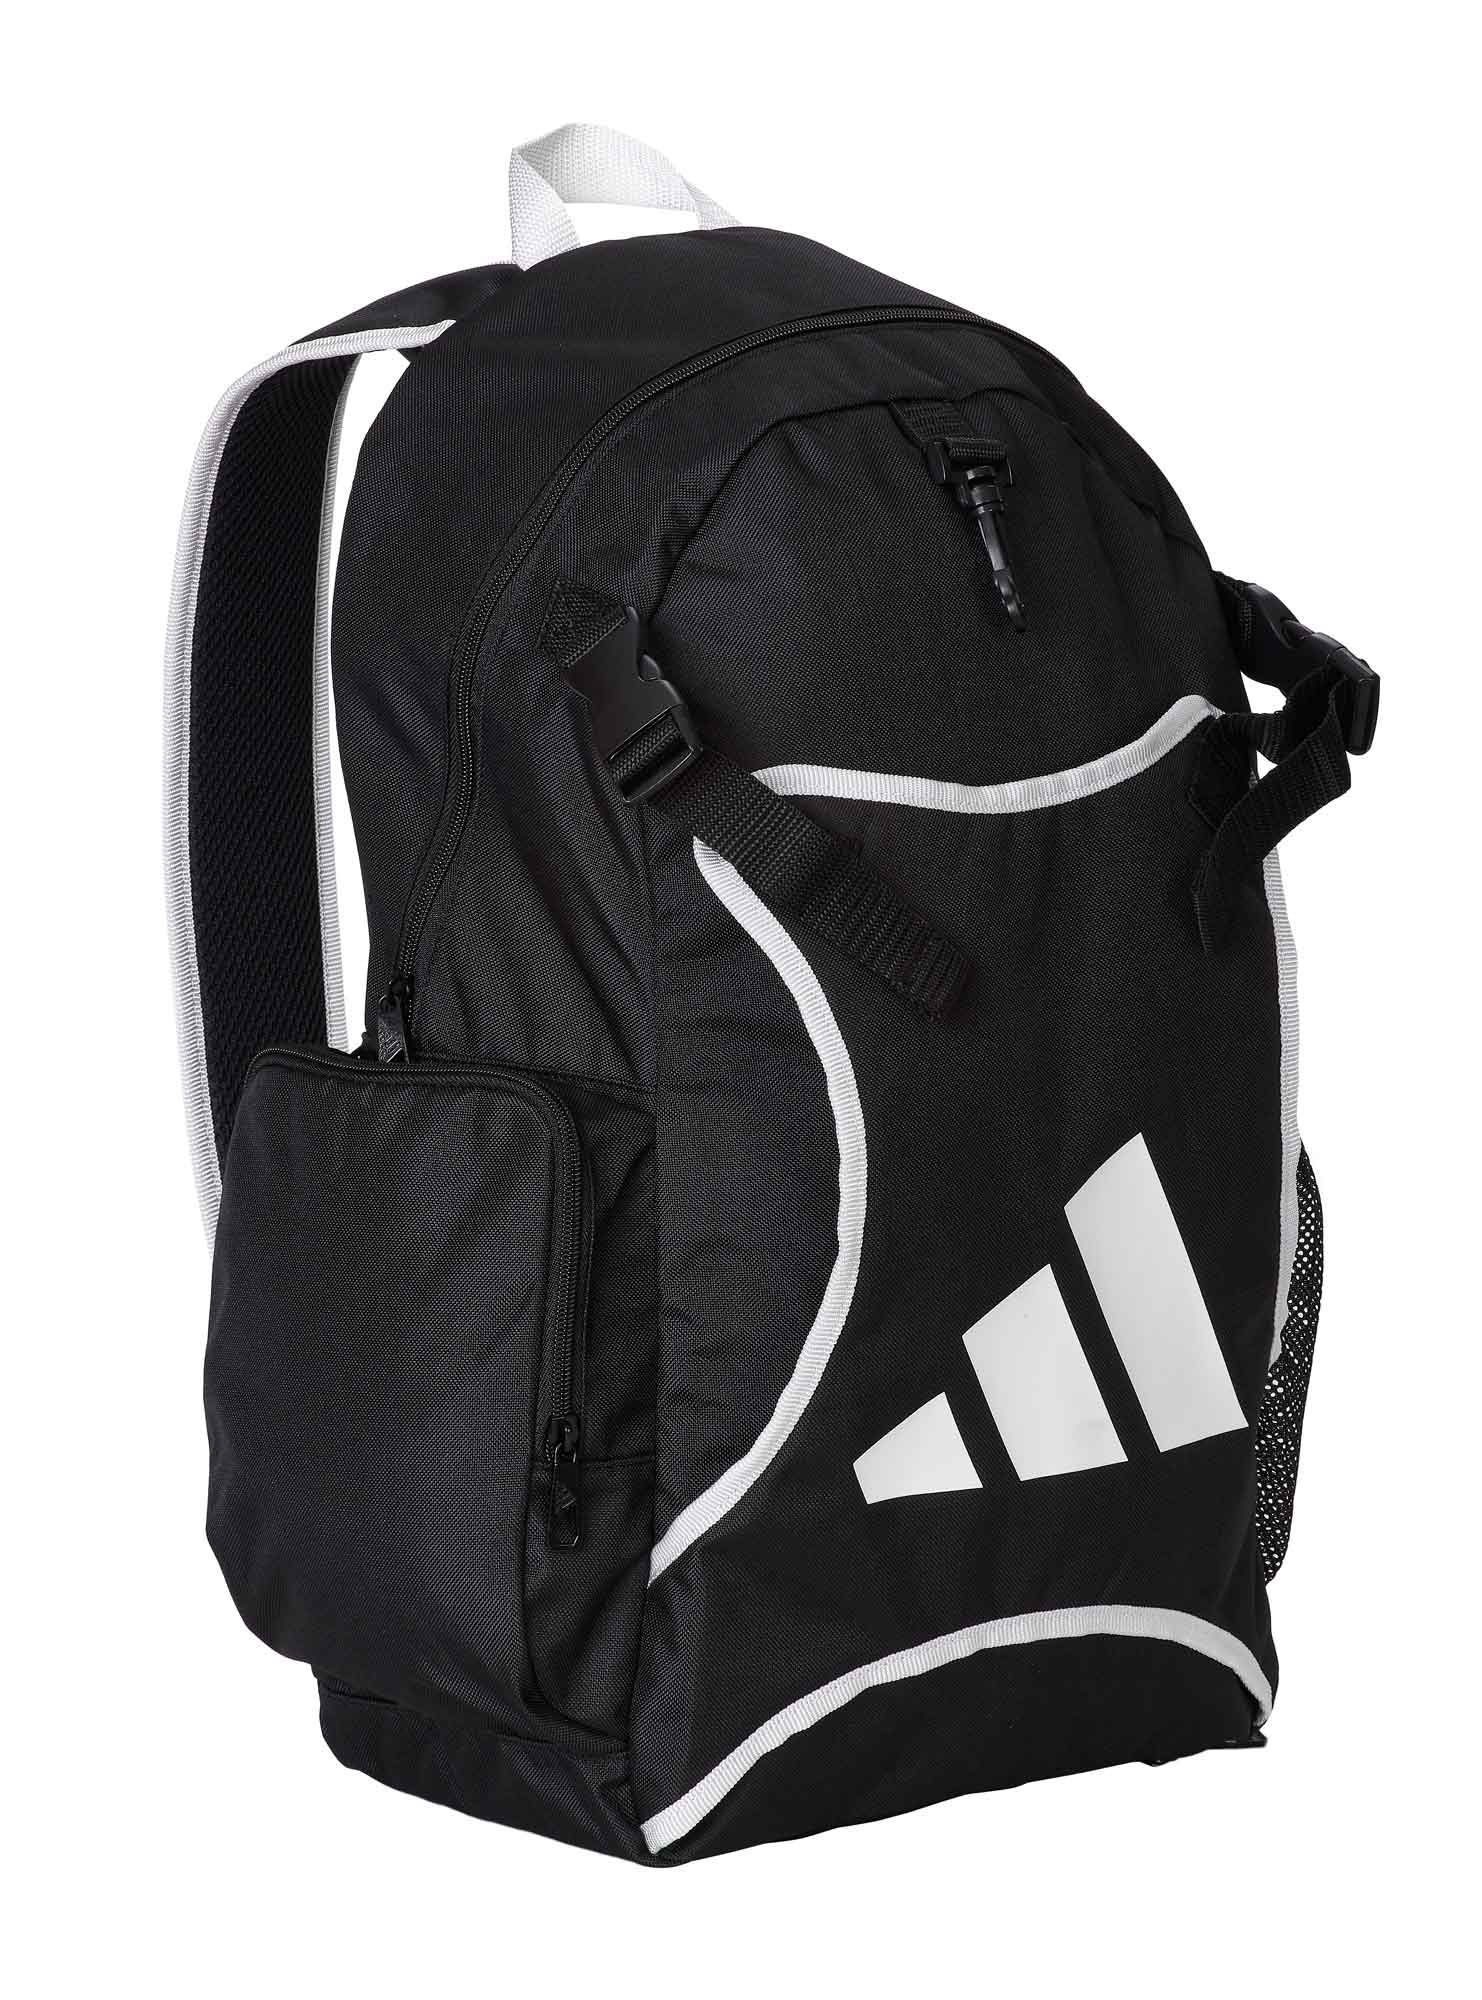 adidas backpack Taekwondo with body guard holder ADIACC096 black/white